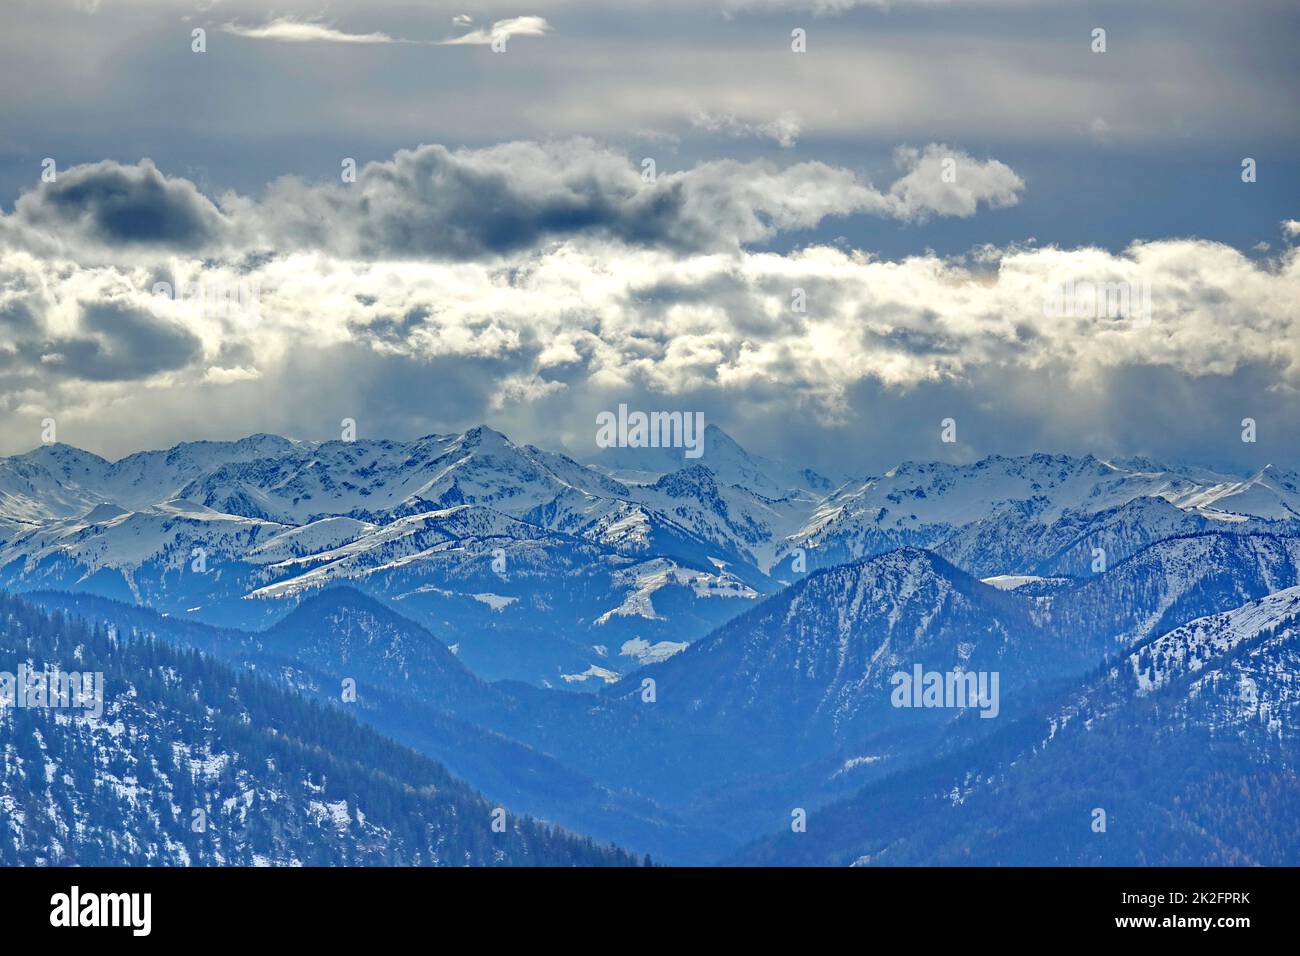 Allemagne, Bavière, haute-Bavière, vue de la montagne Wildalpjoch, montagnes mangfall, montagnes du Tyrol, nuageux, contre-jour Banque D'Images